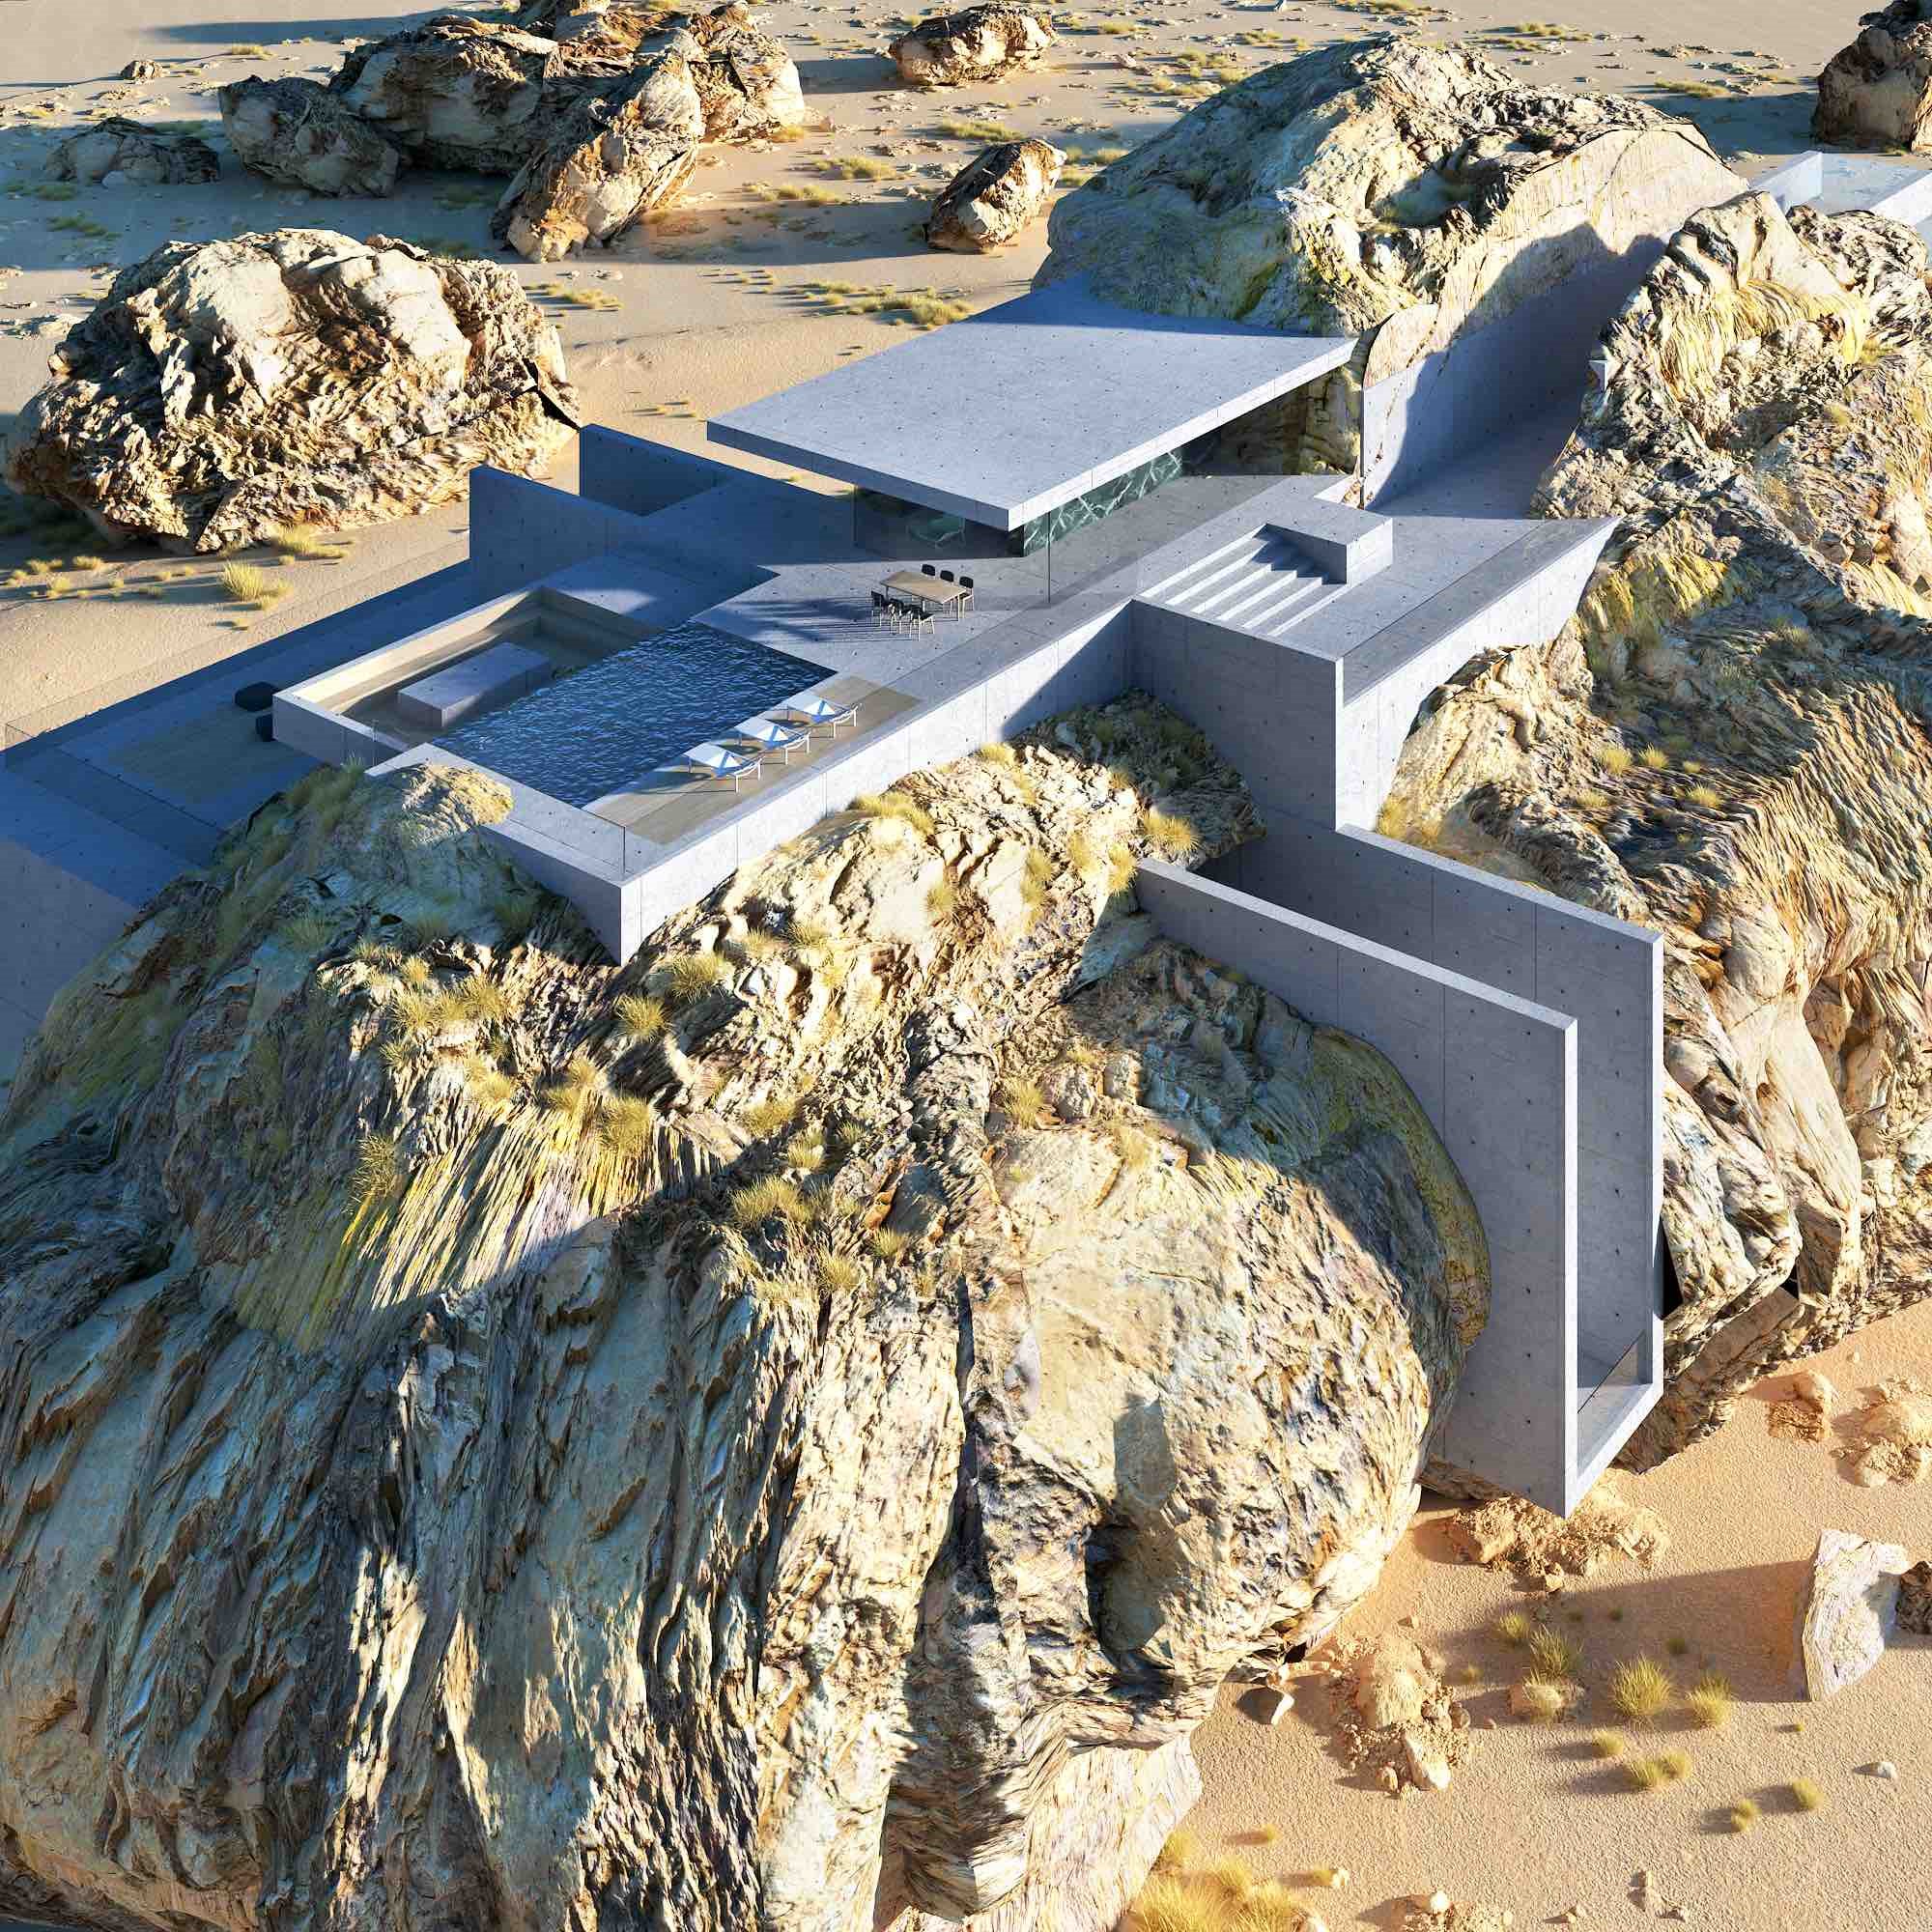 Proyecto en render 3d de una casa en una roca